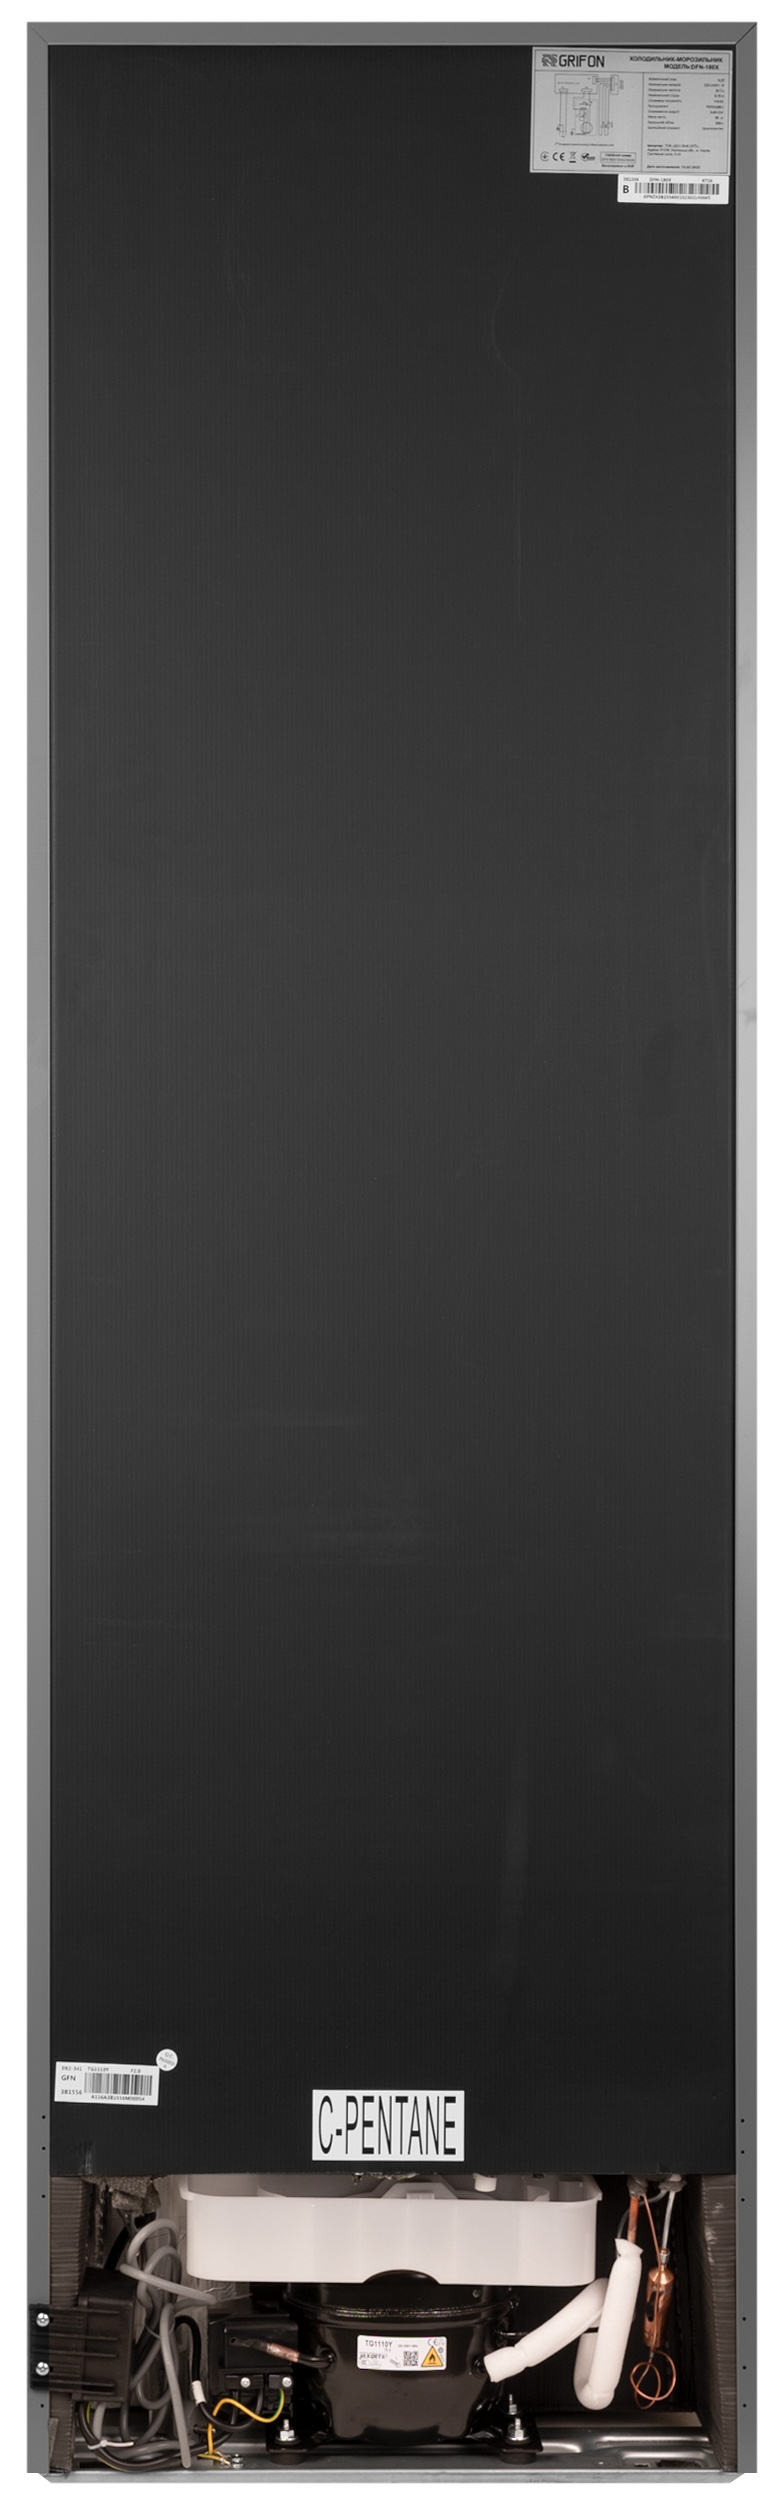 Холодильник Grifon DFN-180X инструкция - изображение 6